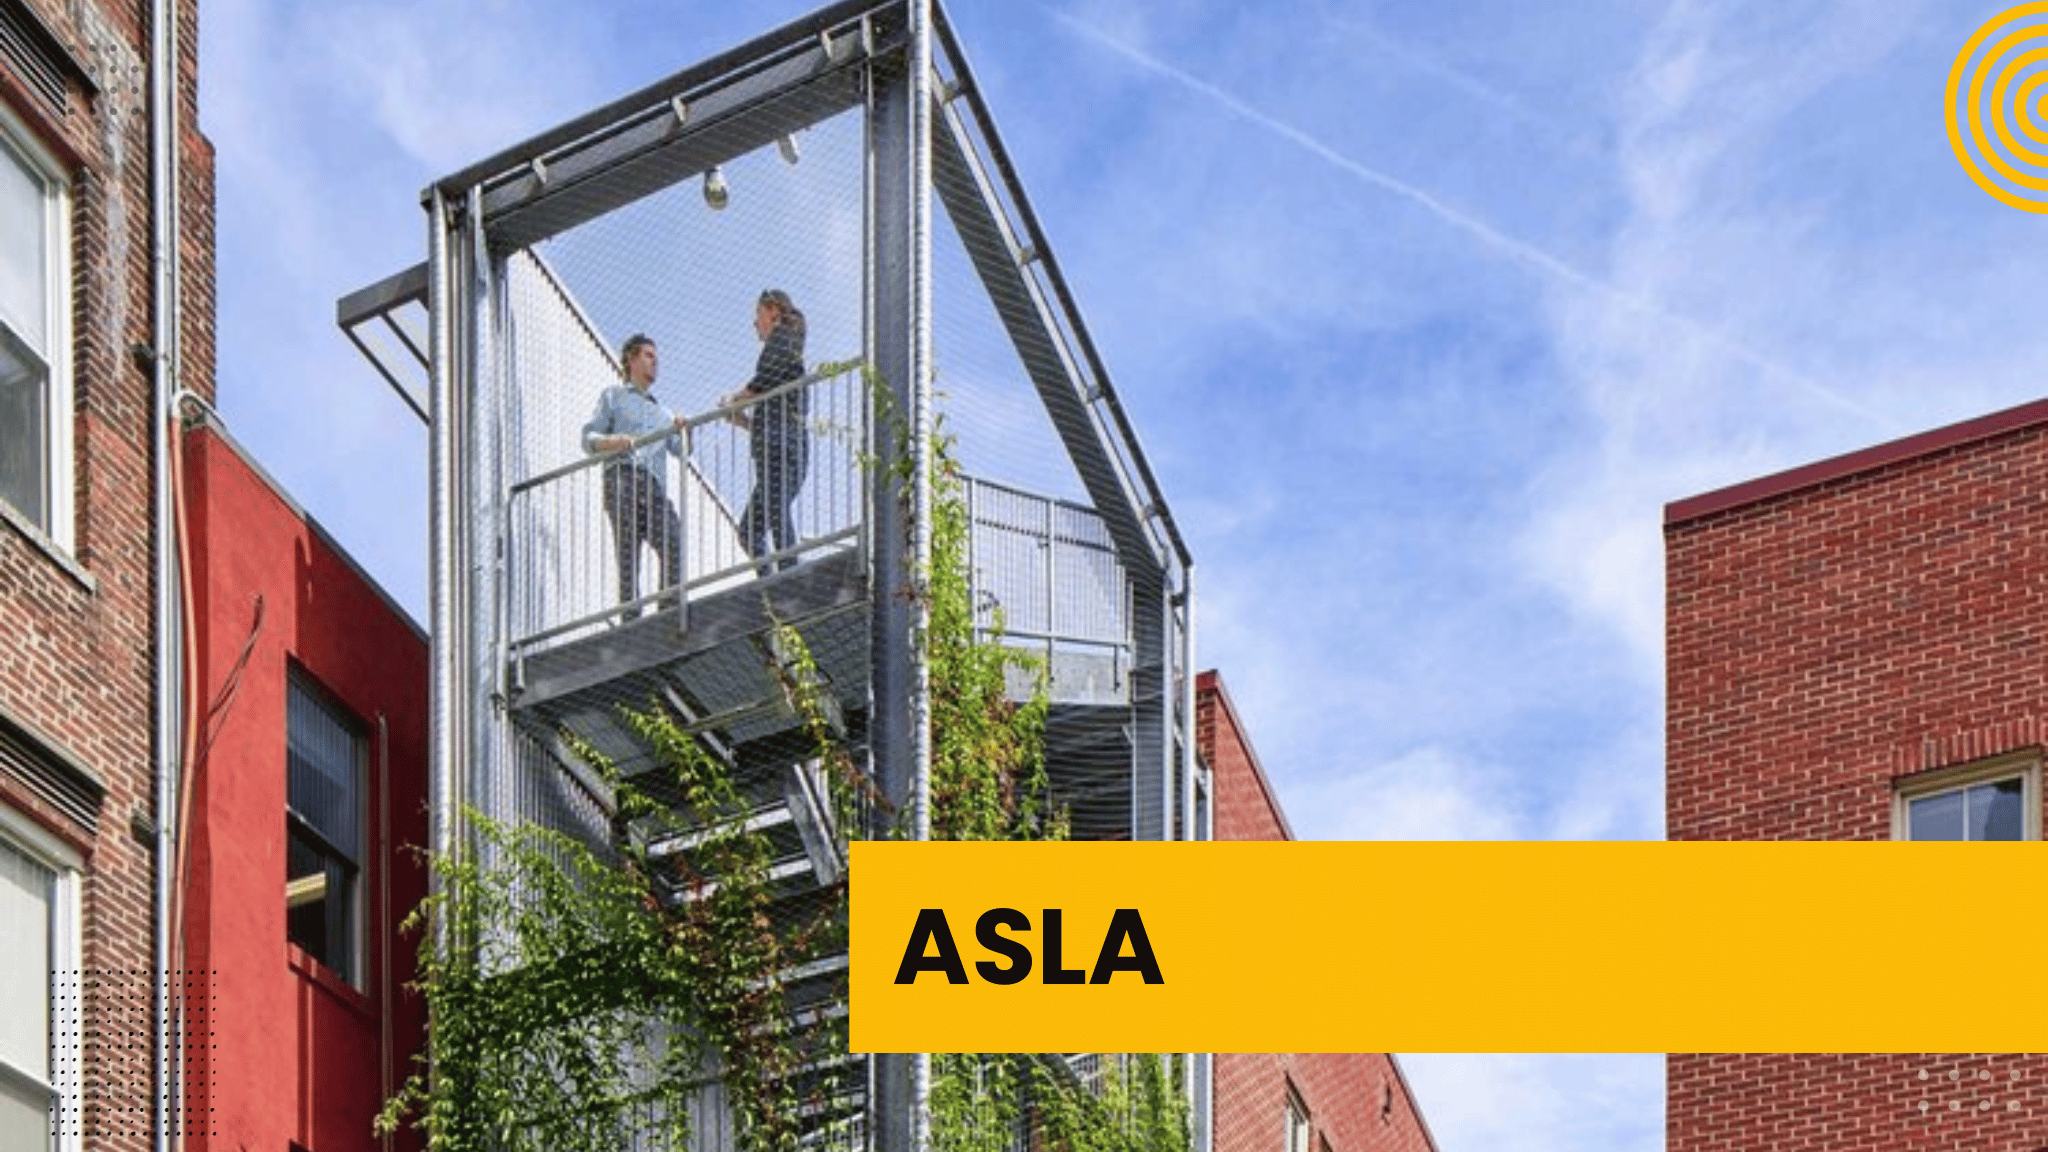 American Society of Landscape Architects | ASLA